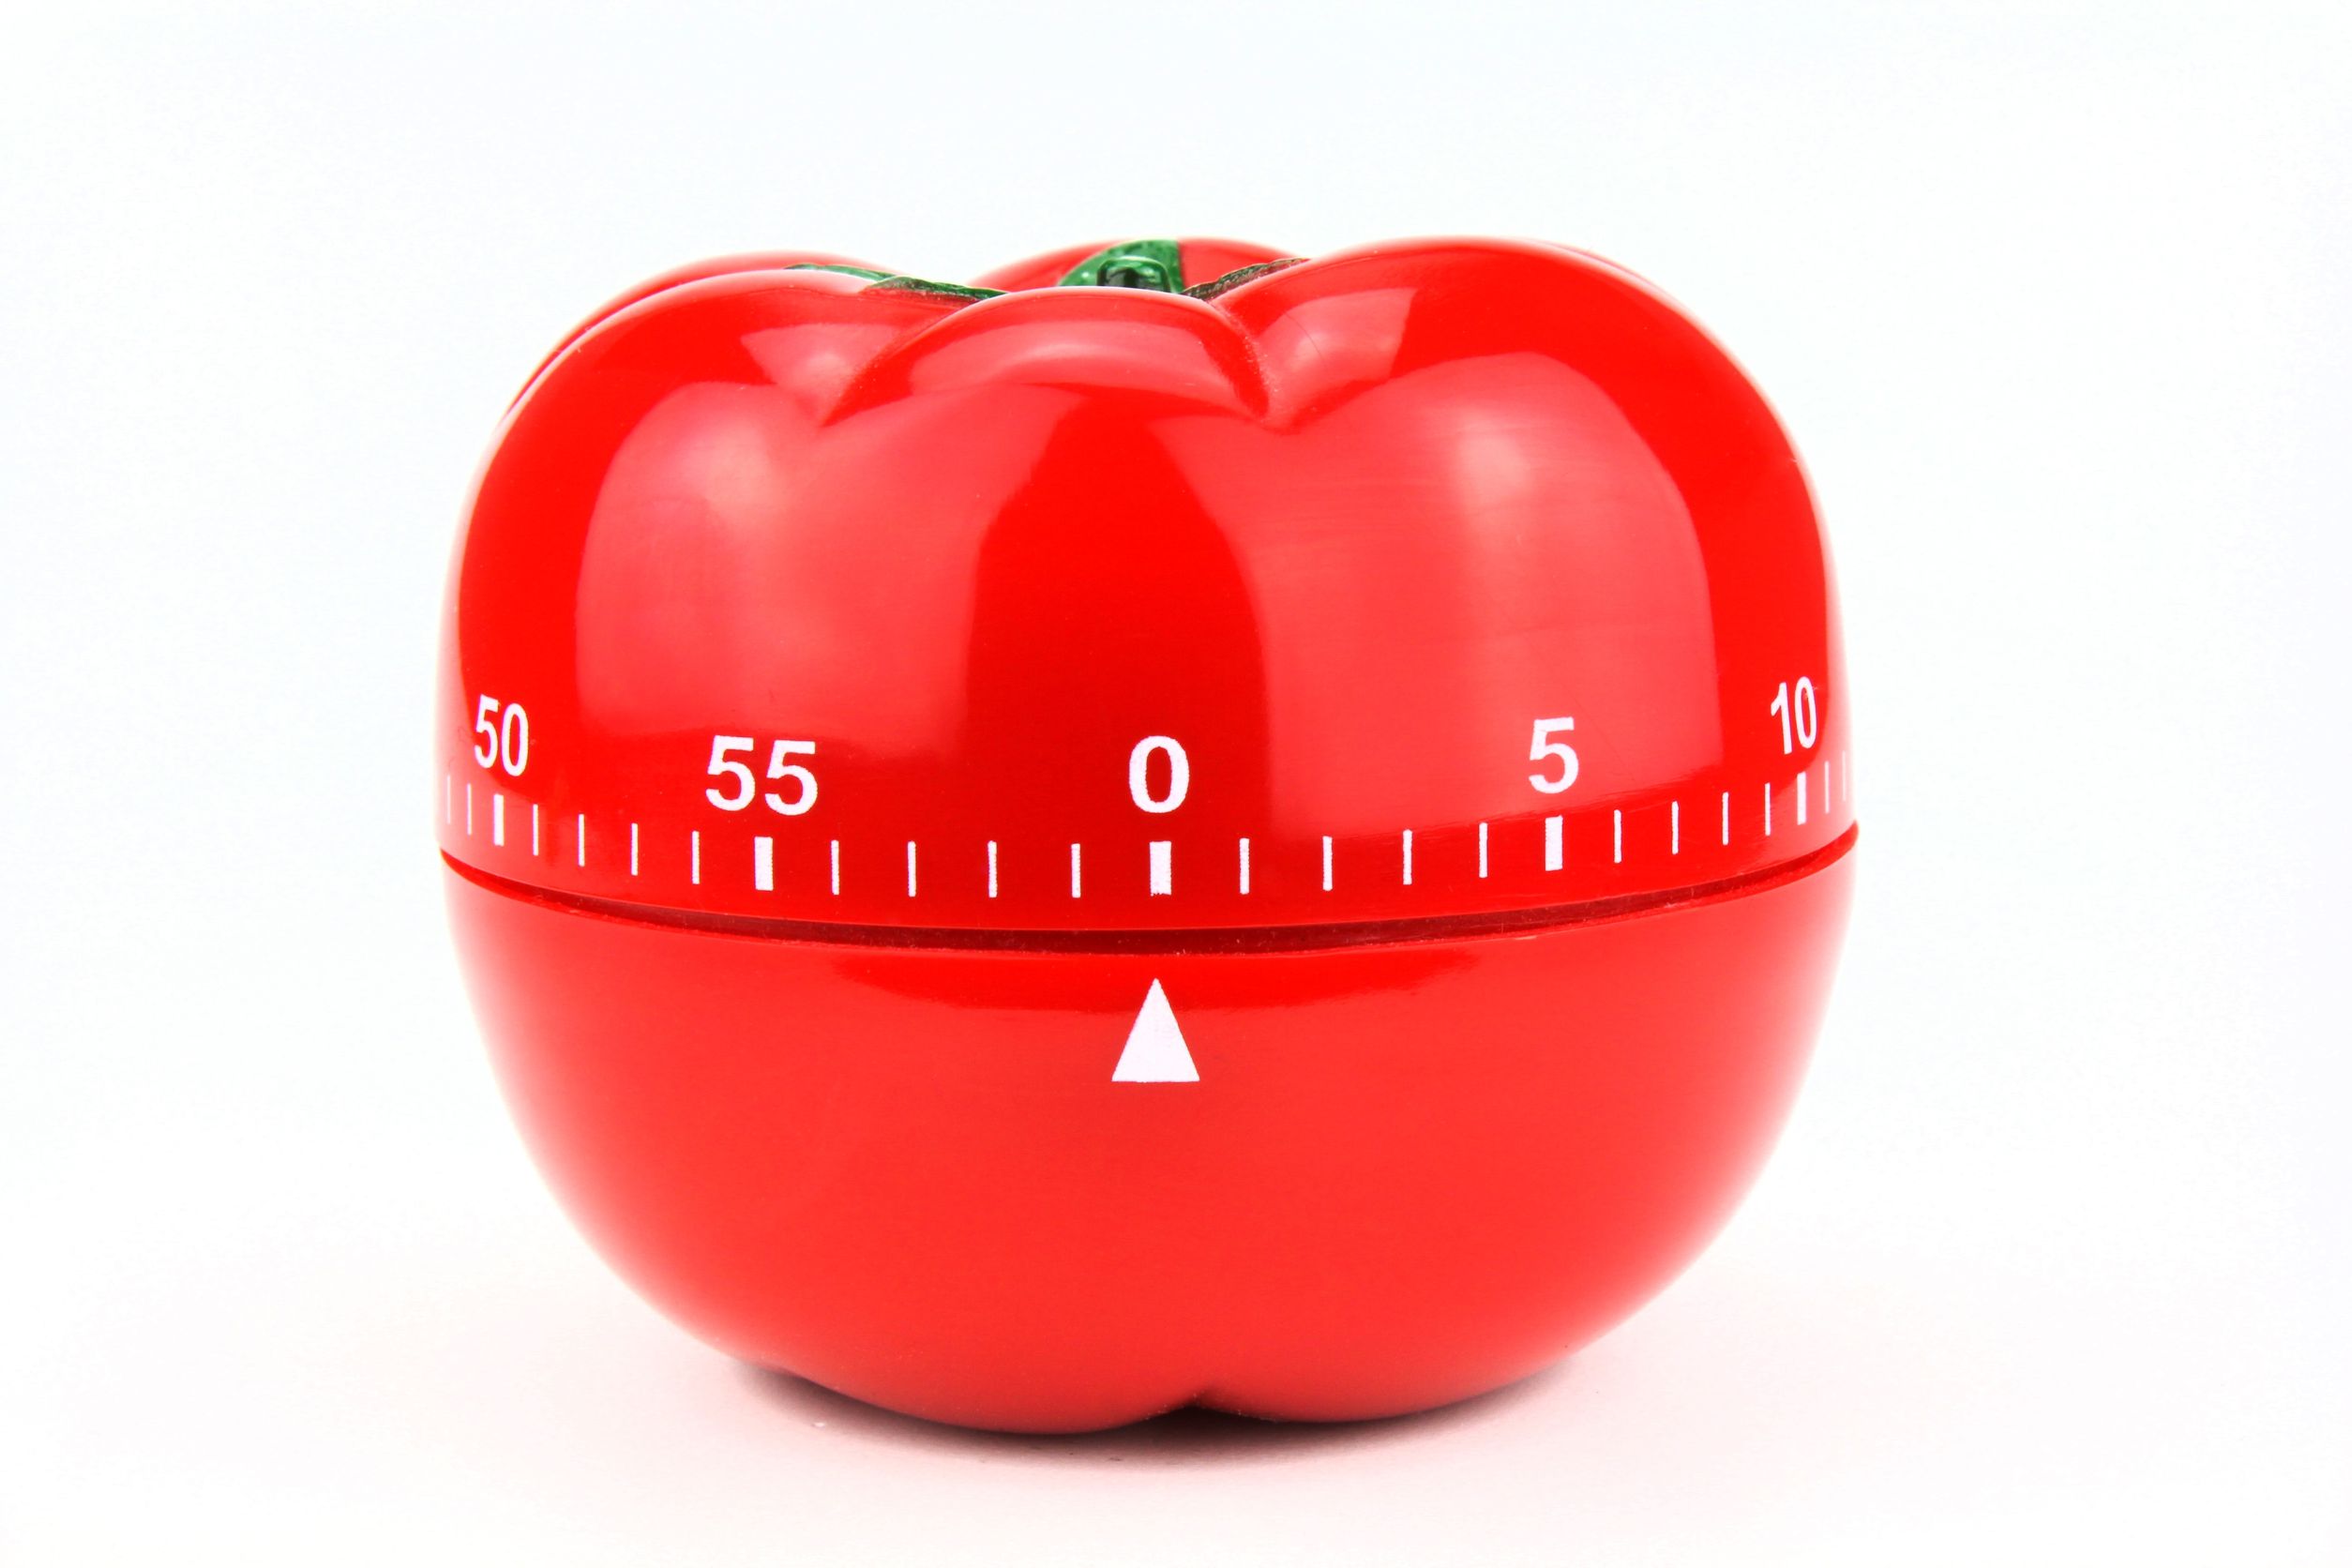 pomodoro technique tomato timer